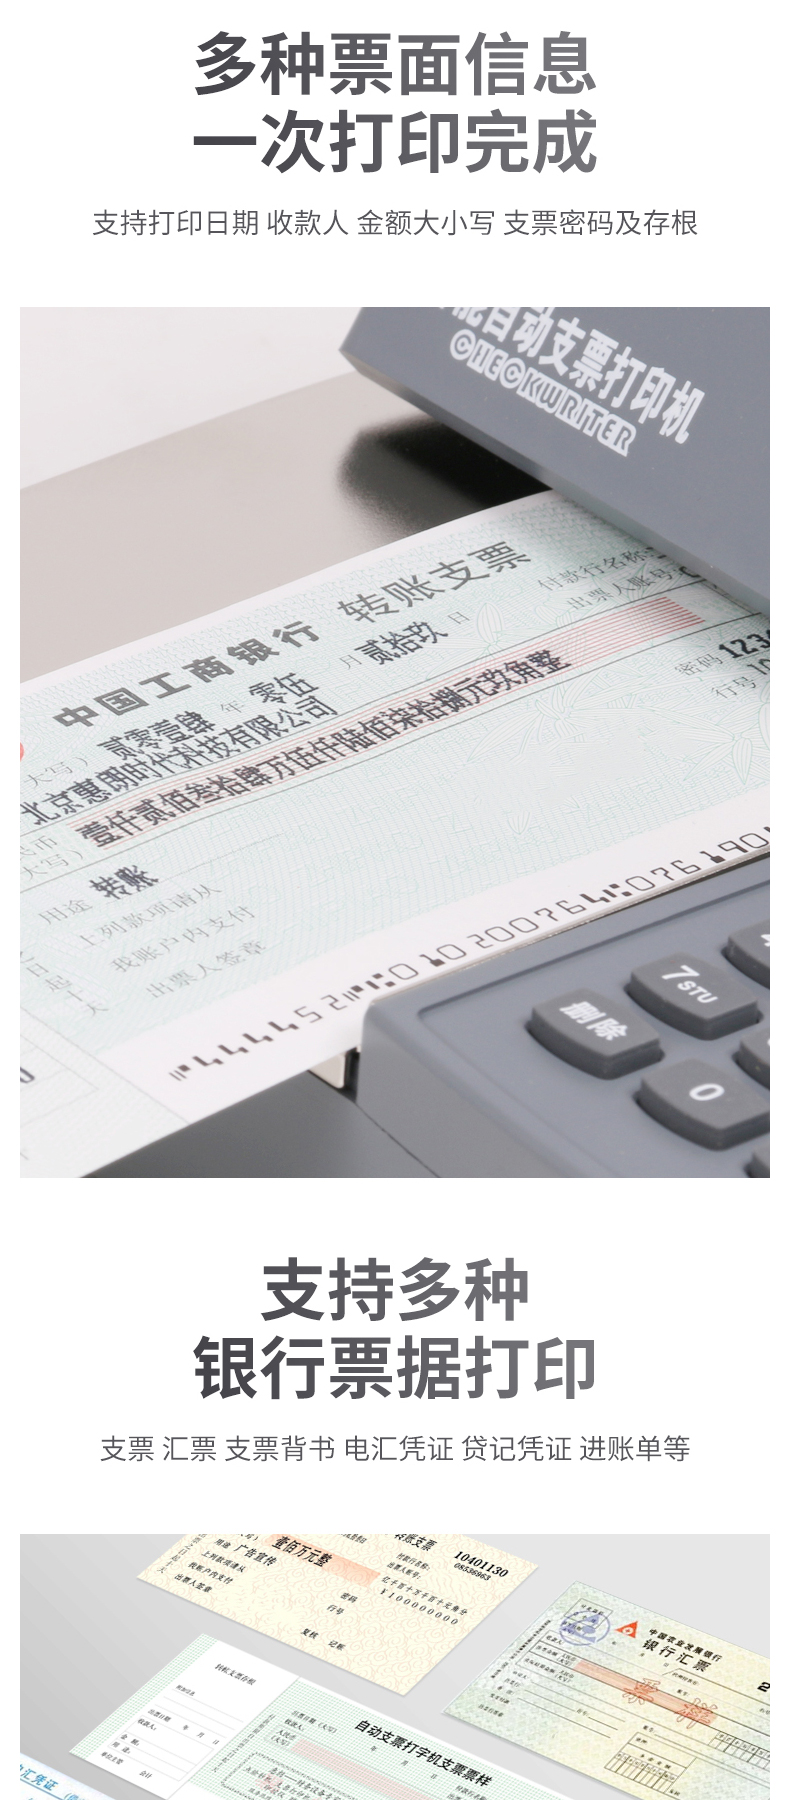 惠朗 HUILANG 自动支票打印机 HL-730K 